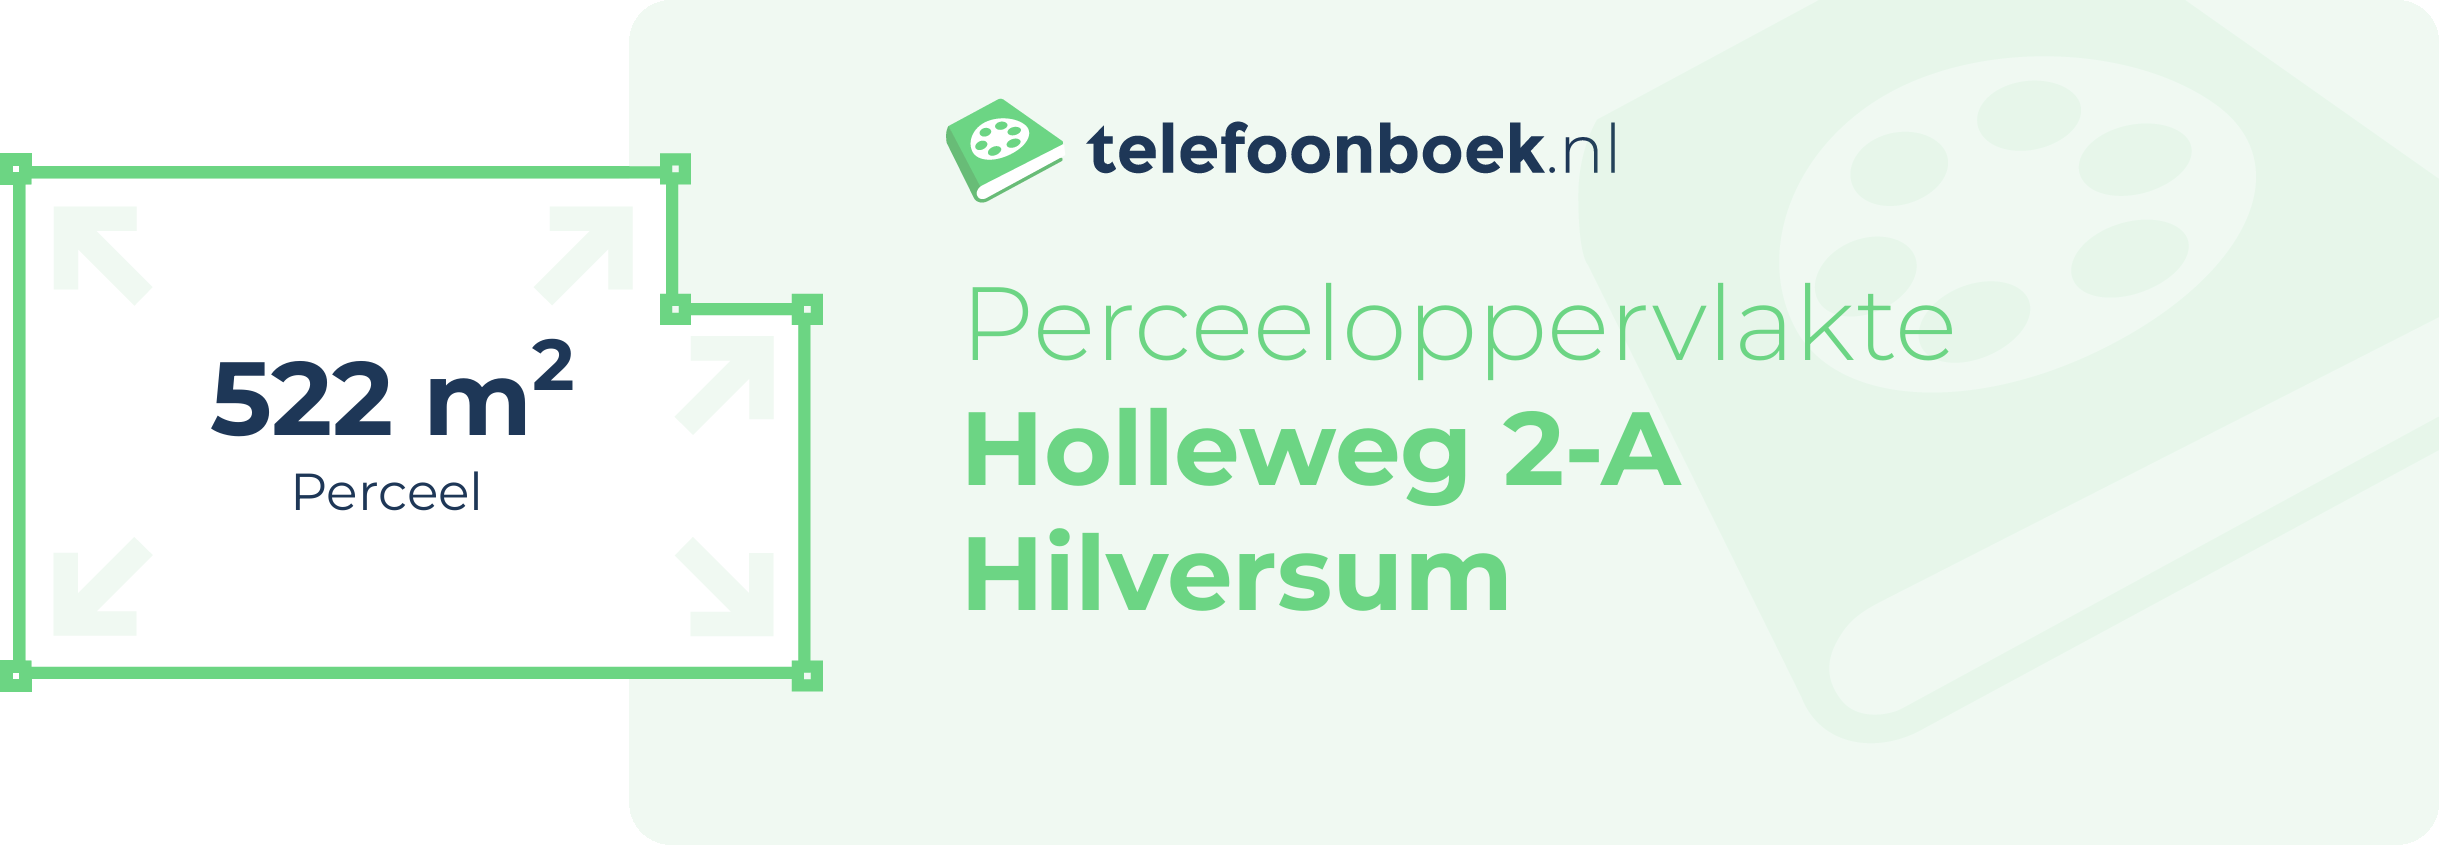 Perceeloppervlakte Holleweg 2-A Hilversum